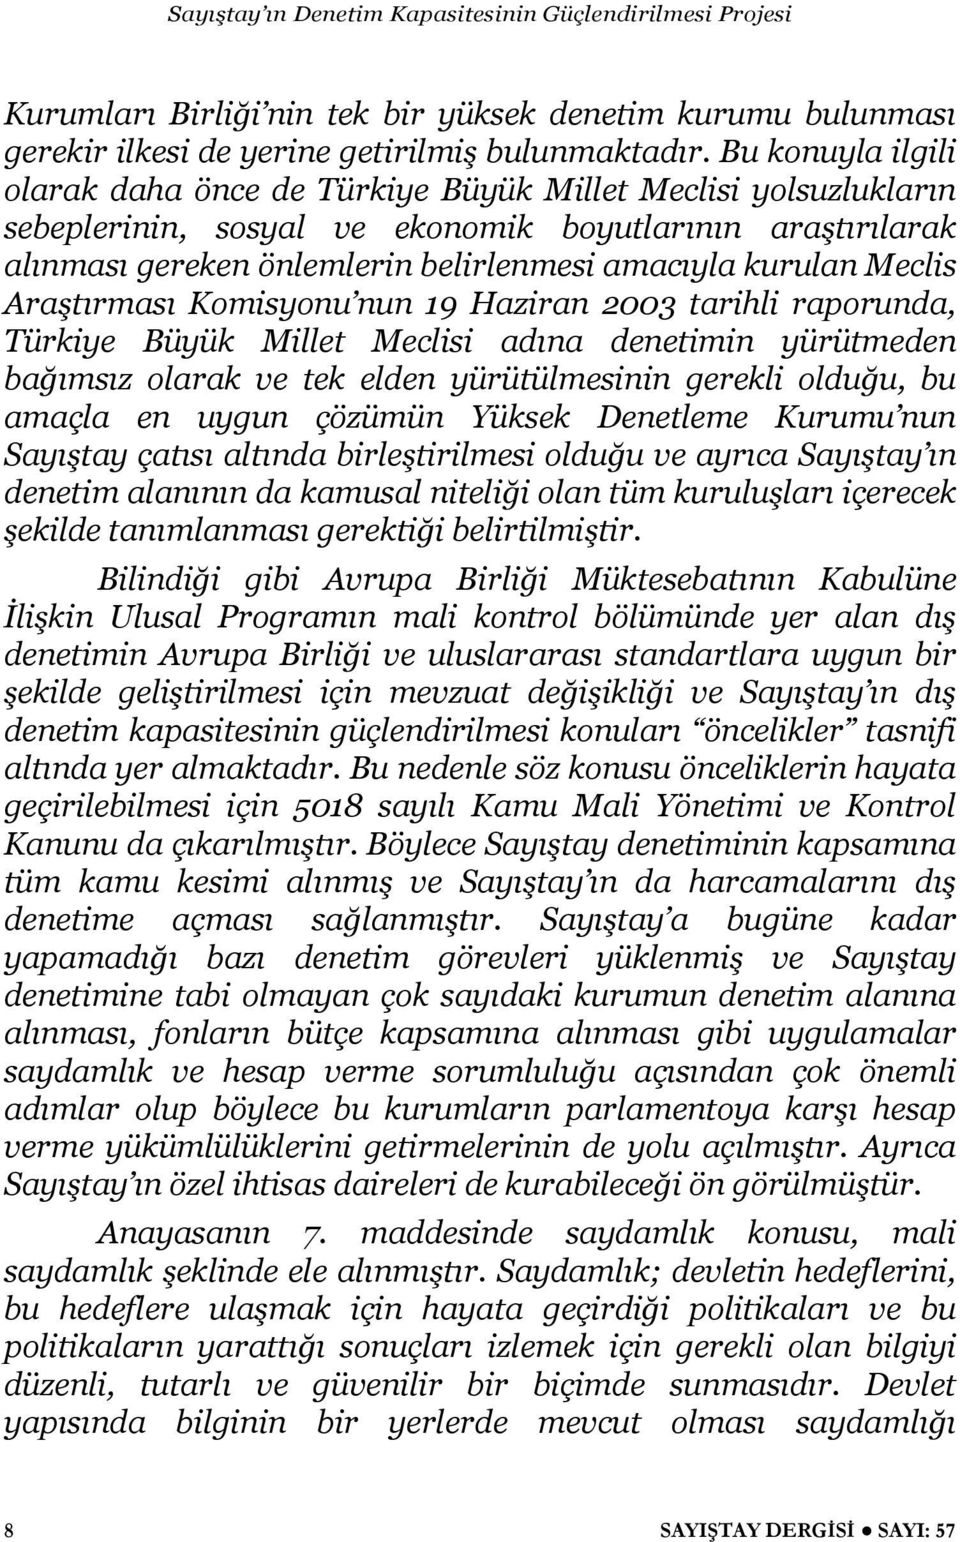 Meclis Ara tırması Komisyonu nun 19 Haziran 2003 tarihli raporunda, Türkiye Büyük Millet Meclisi adına denetimin yürütmeden ba ımsız olarak ve tek elden yürütülmesinin gerekli oldu u, bu amaçla en